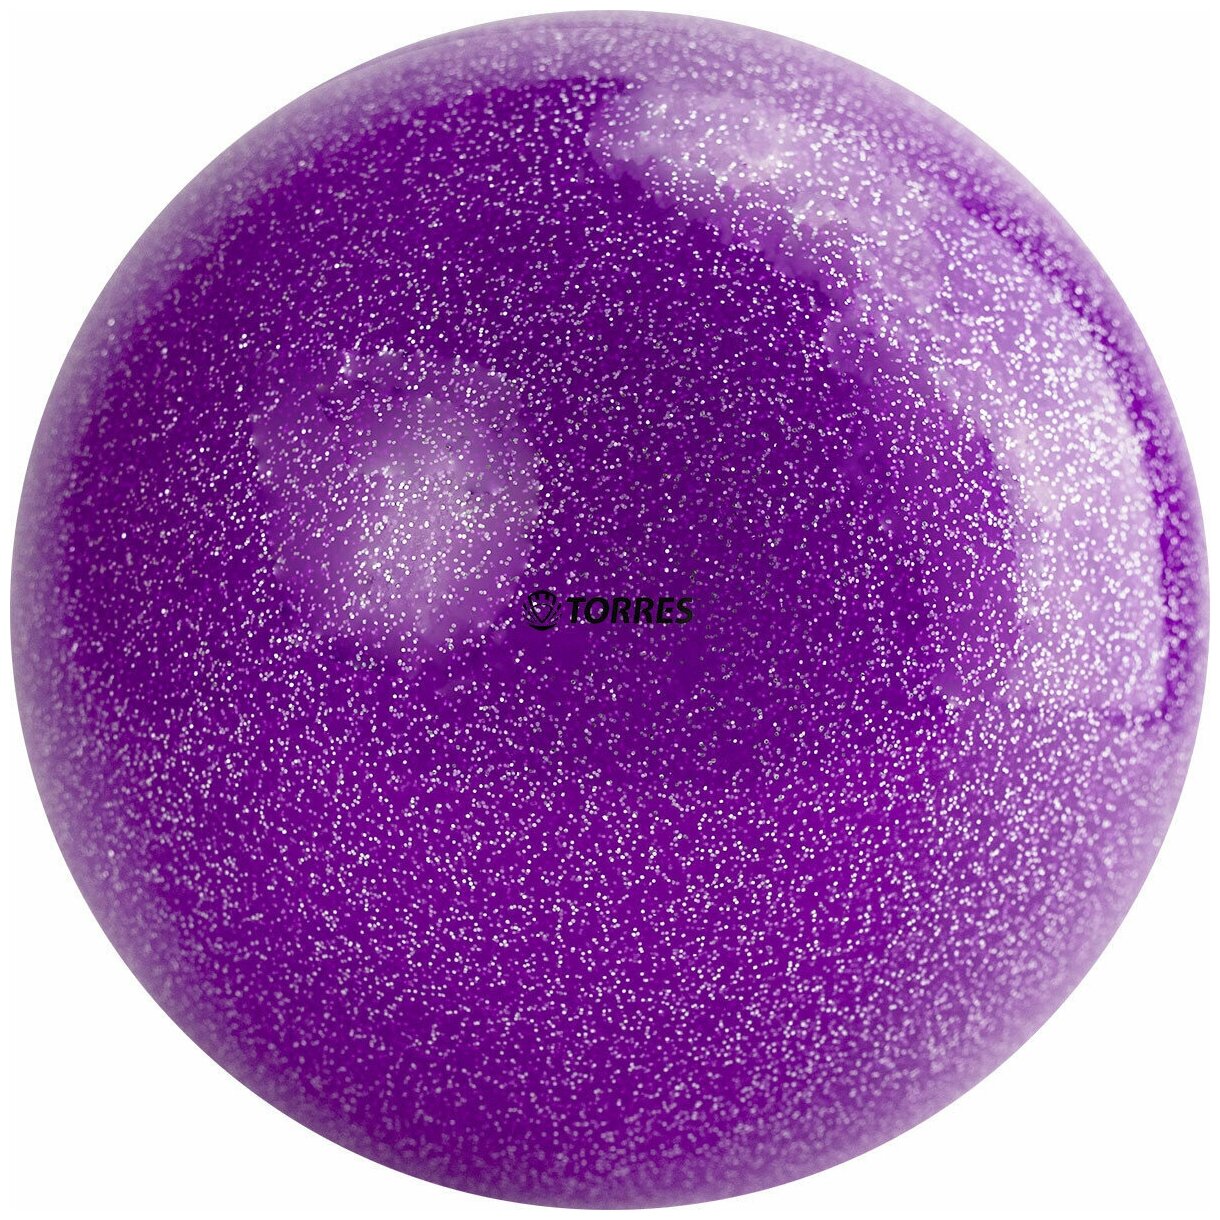 Мяч для художественной гимнастики однотонный TORRES AGP-15-03 диаметр 15 см фиолетовый с блестками